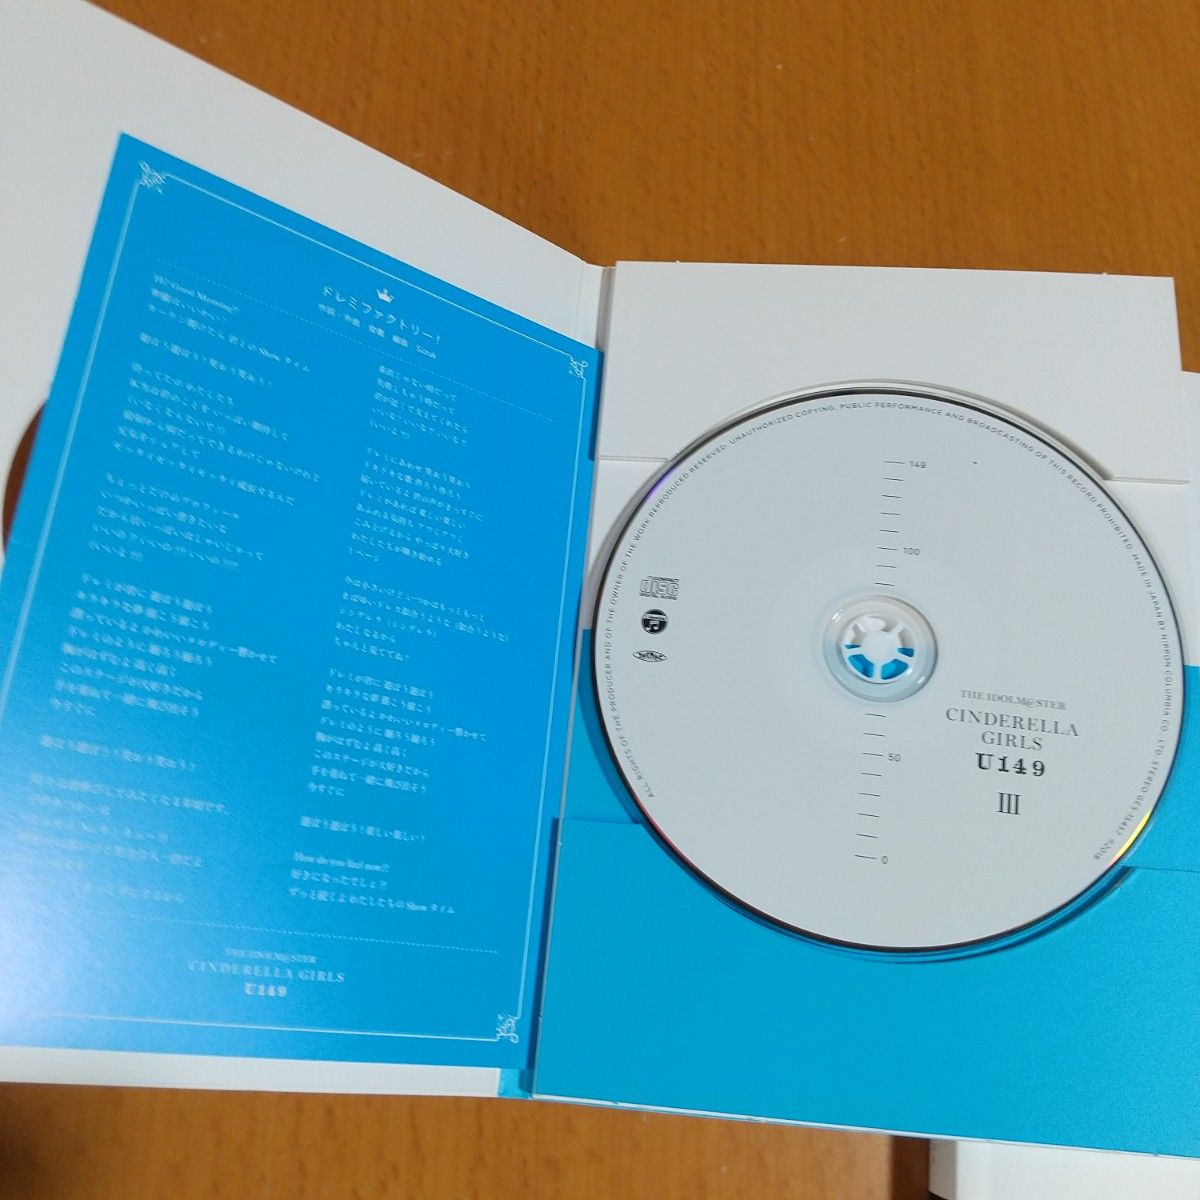 アイドルマスター シンデレラガールズU149オリジナルCD付き特別版3巻